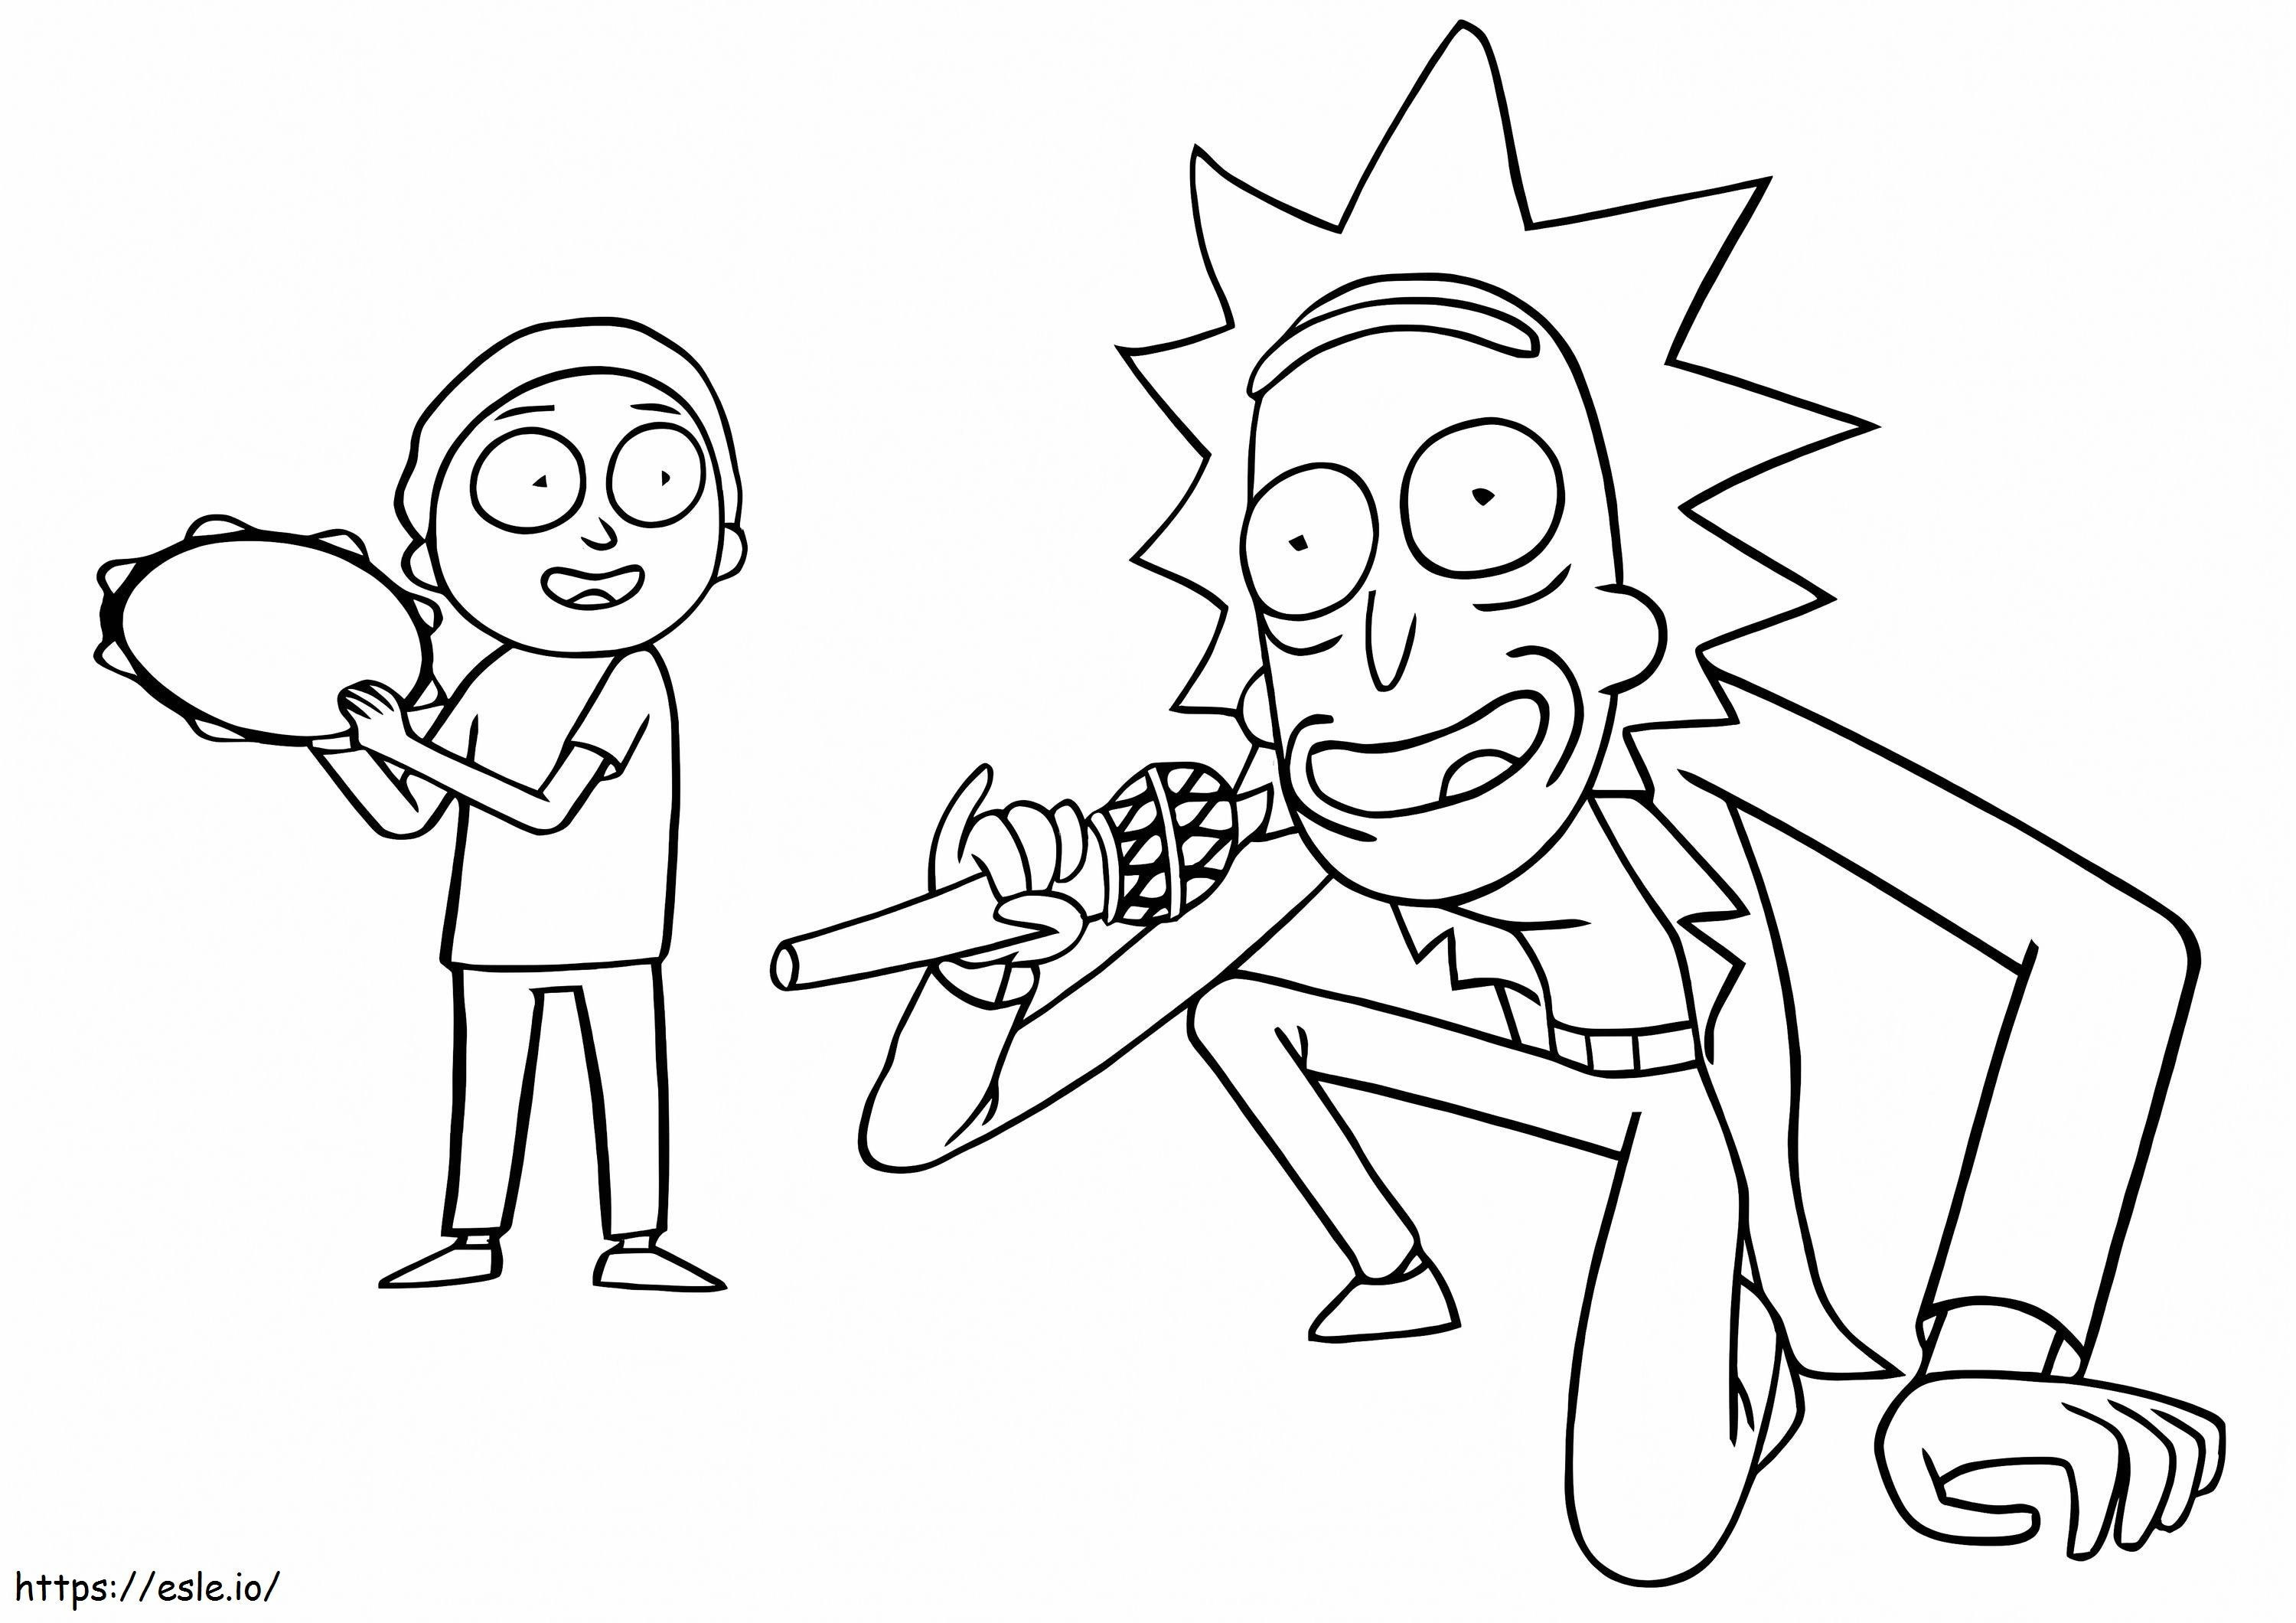 Rick Sanchez e Morty cantando para colorir